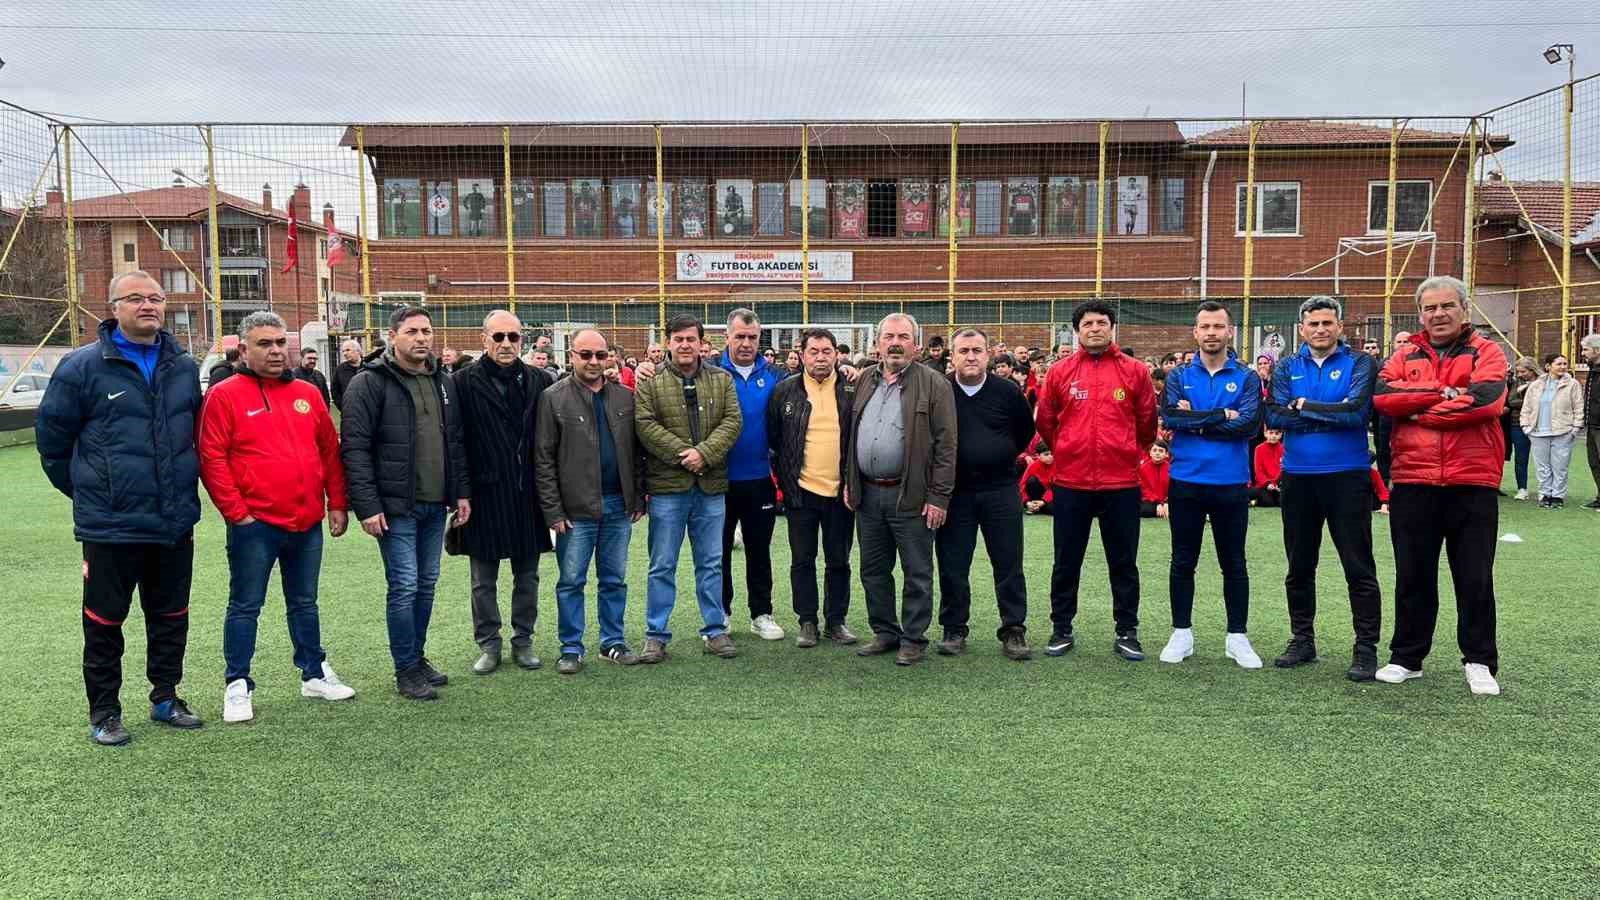 Eskişehir Futbol Altyapı Derneği’nden tesislerin boşaltılmasını isteyen belediyeye tepki